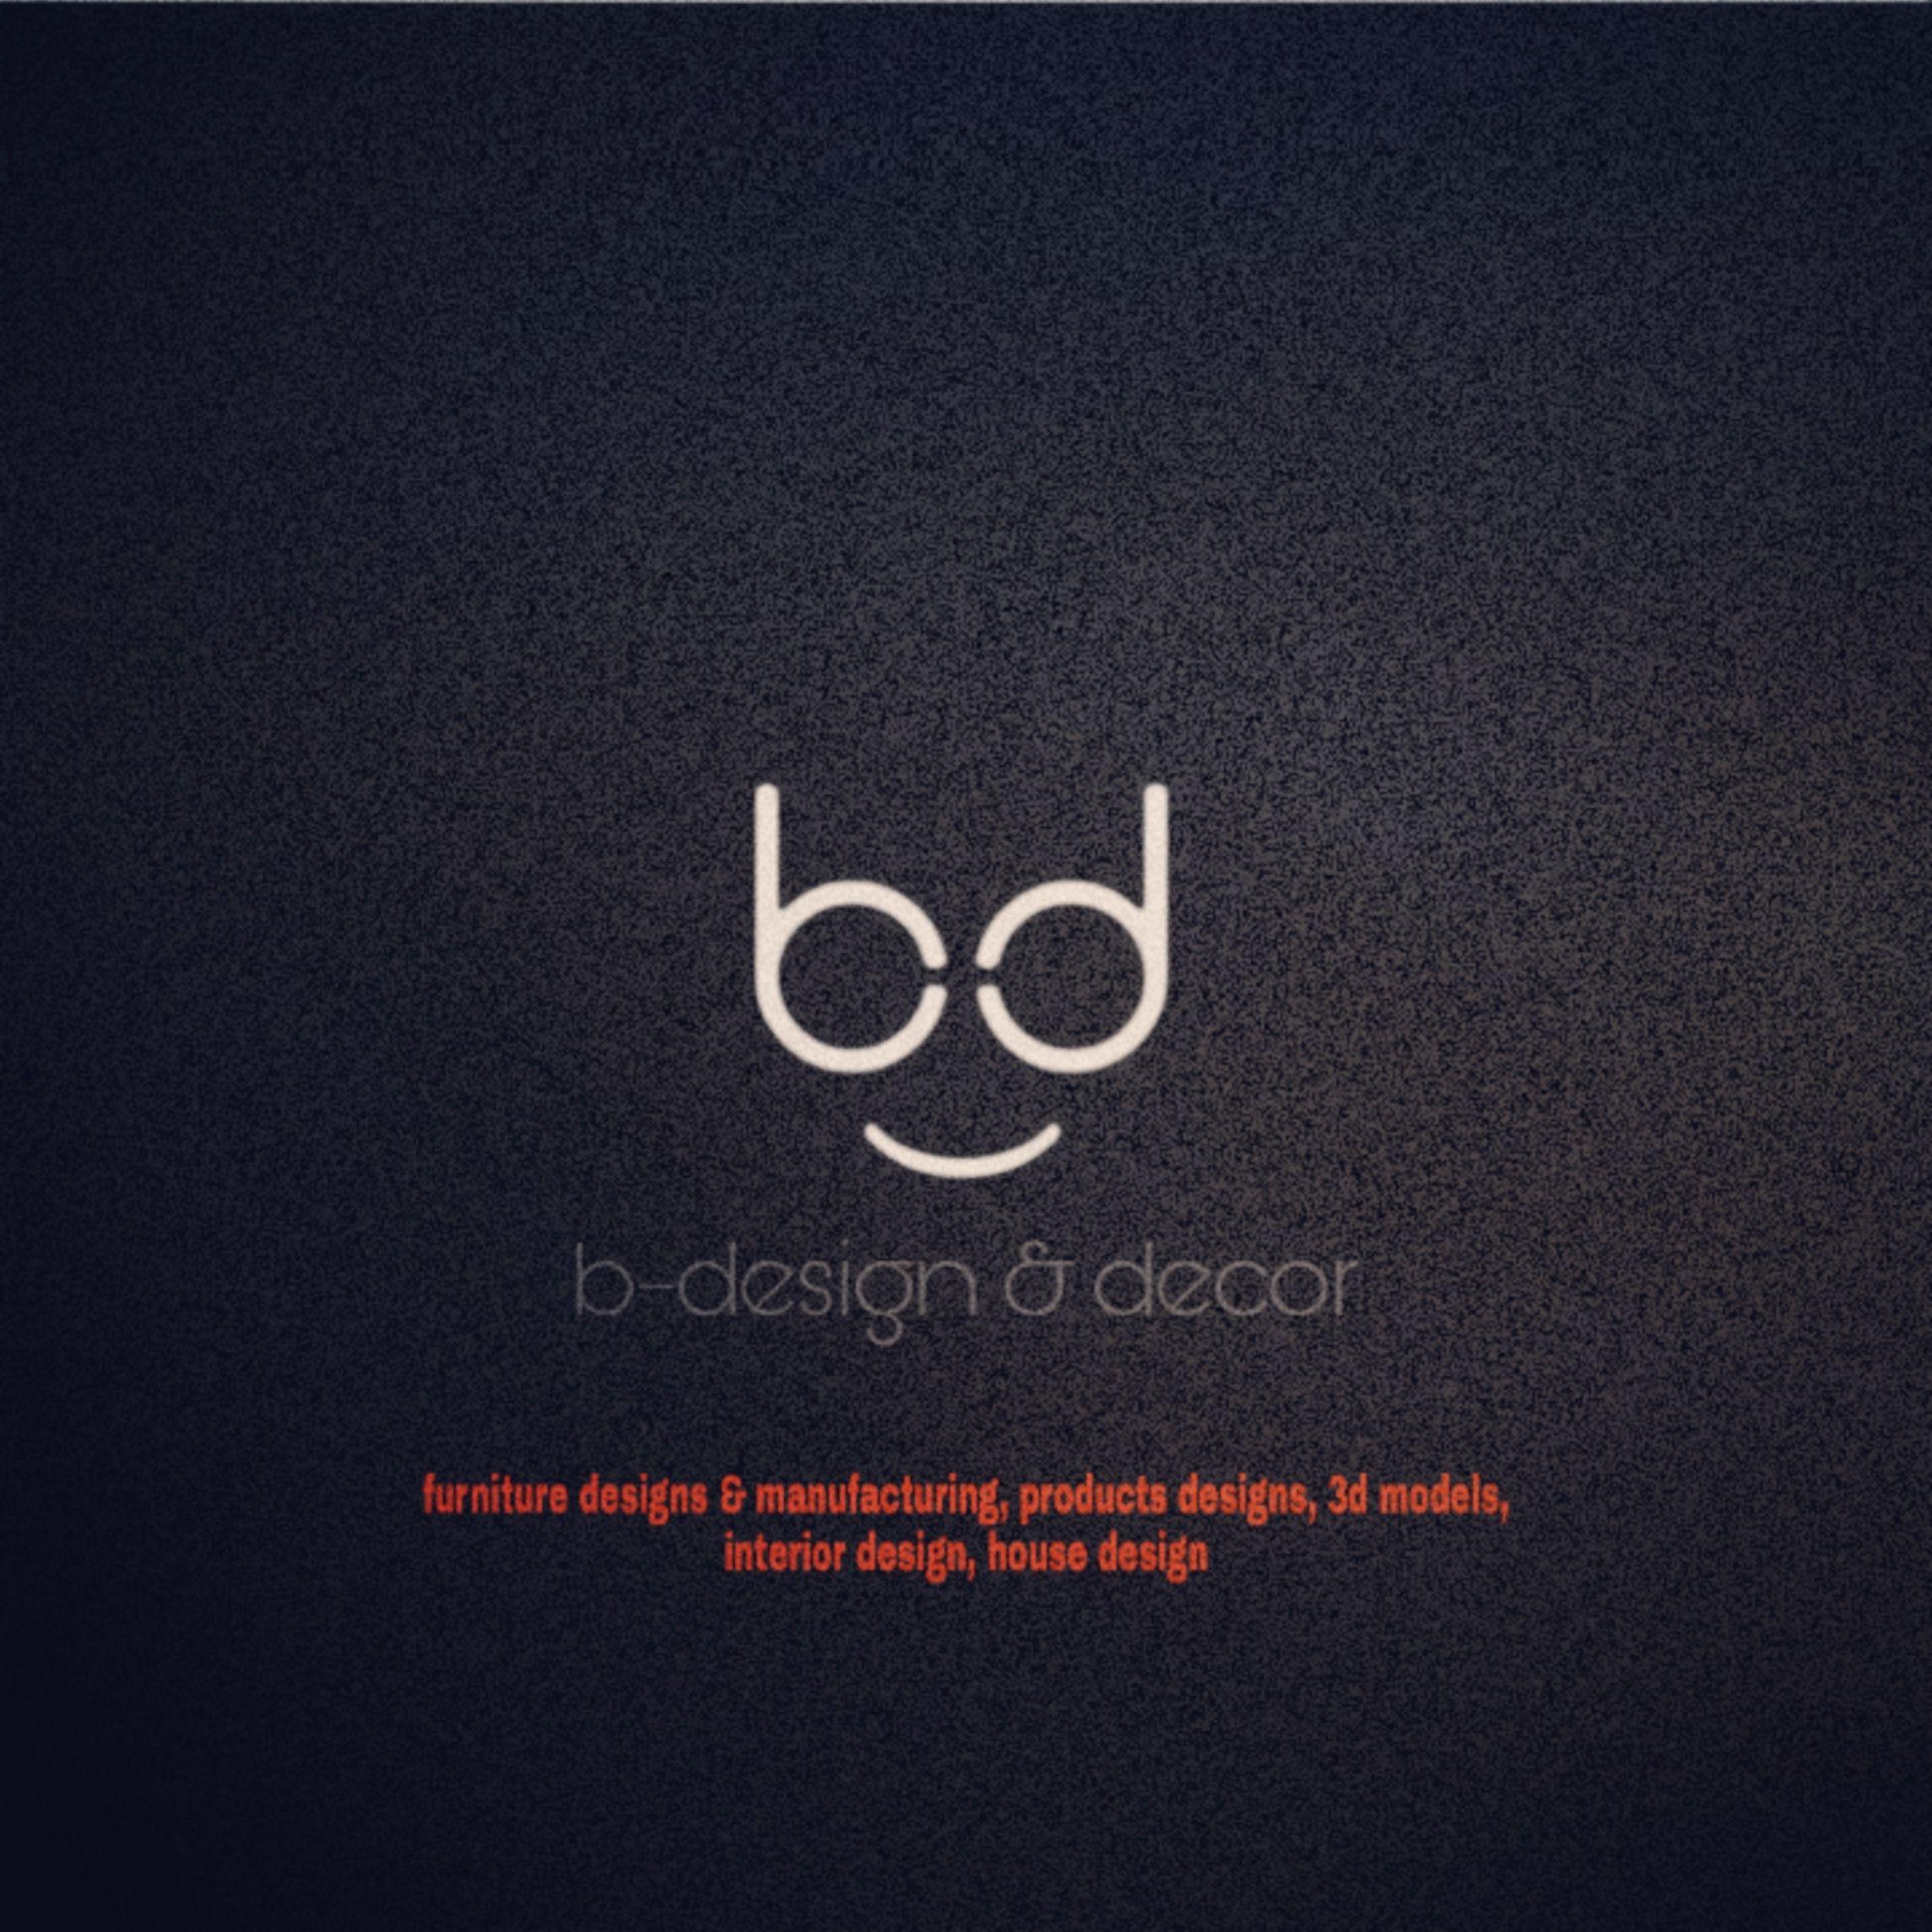 B-Designs and Decor